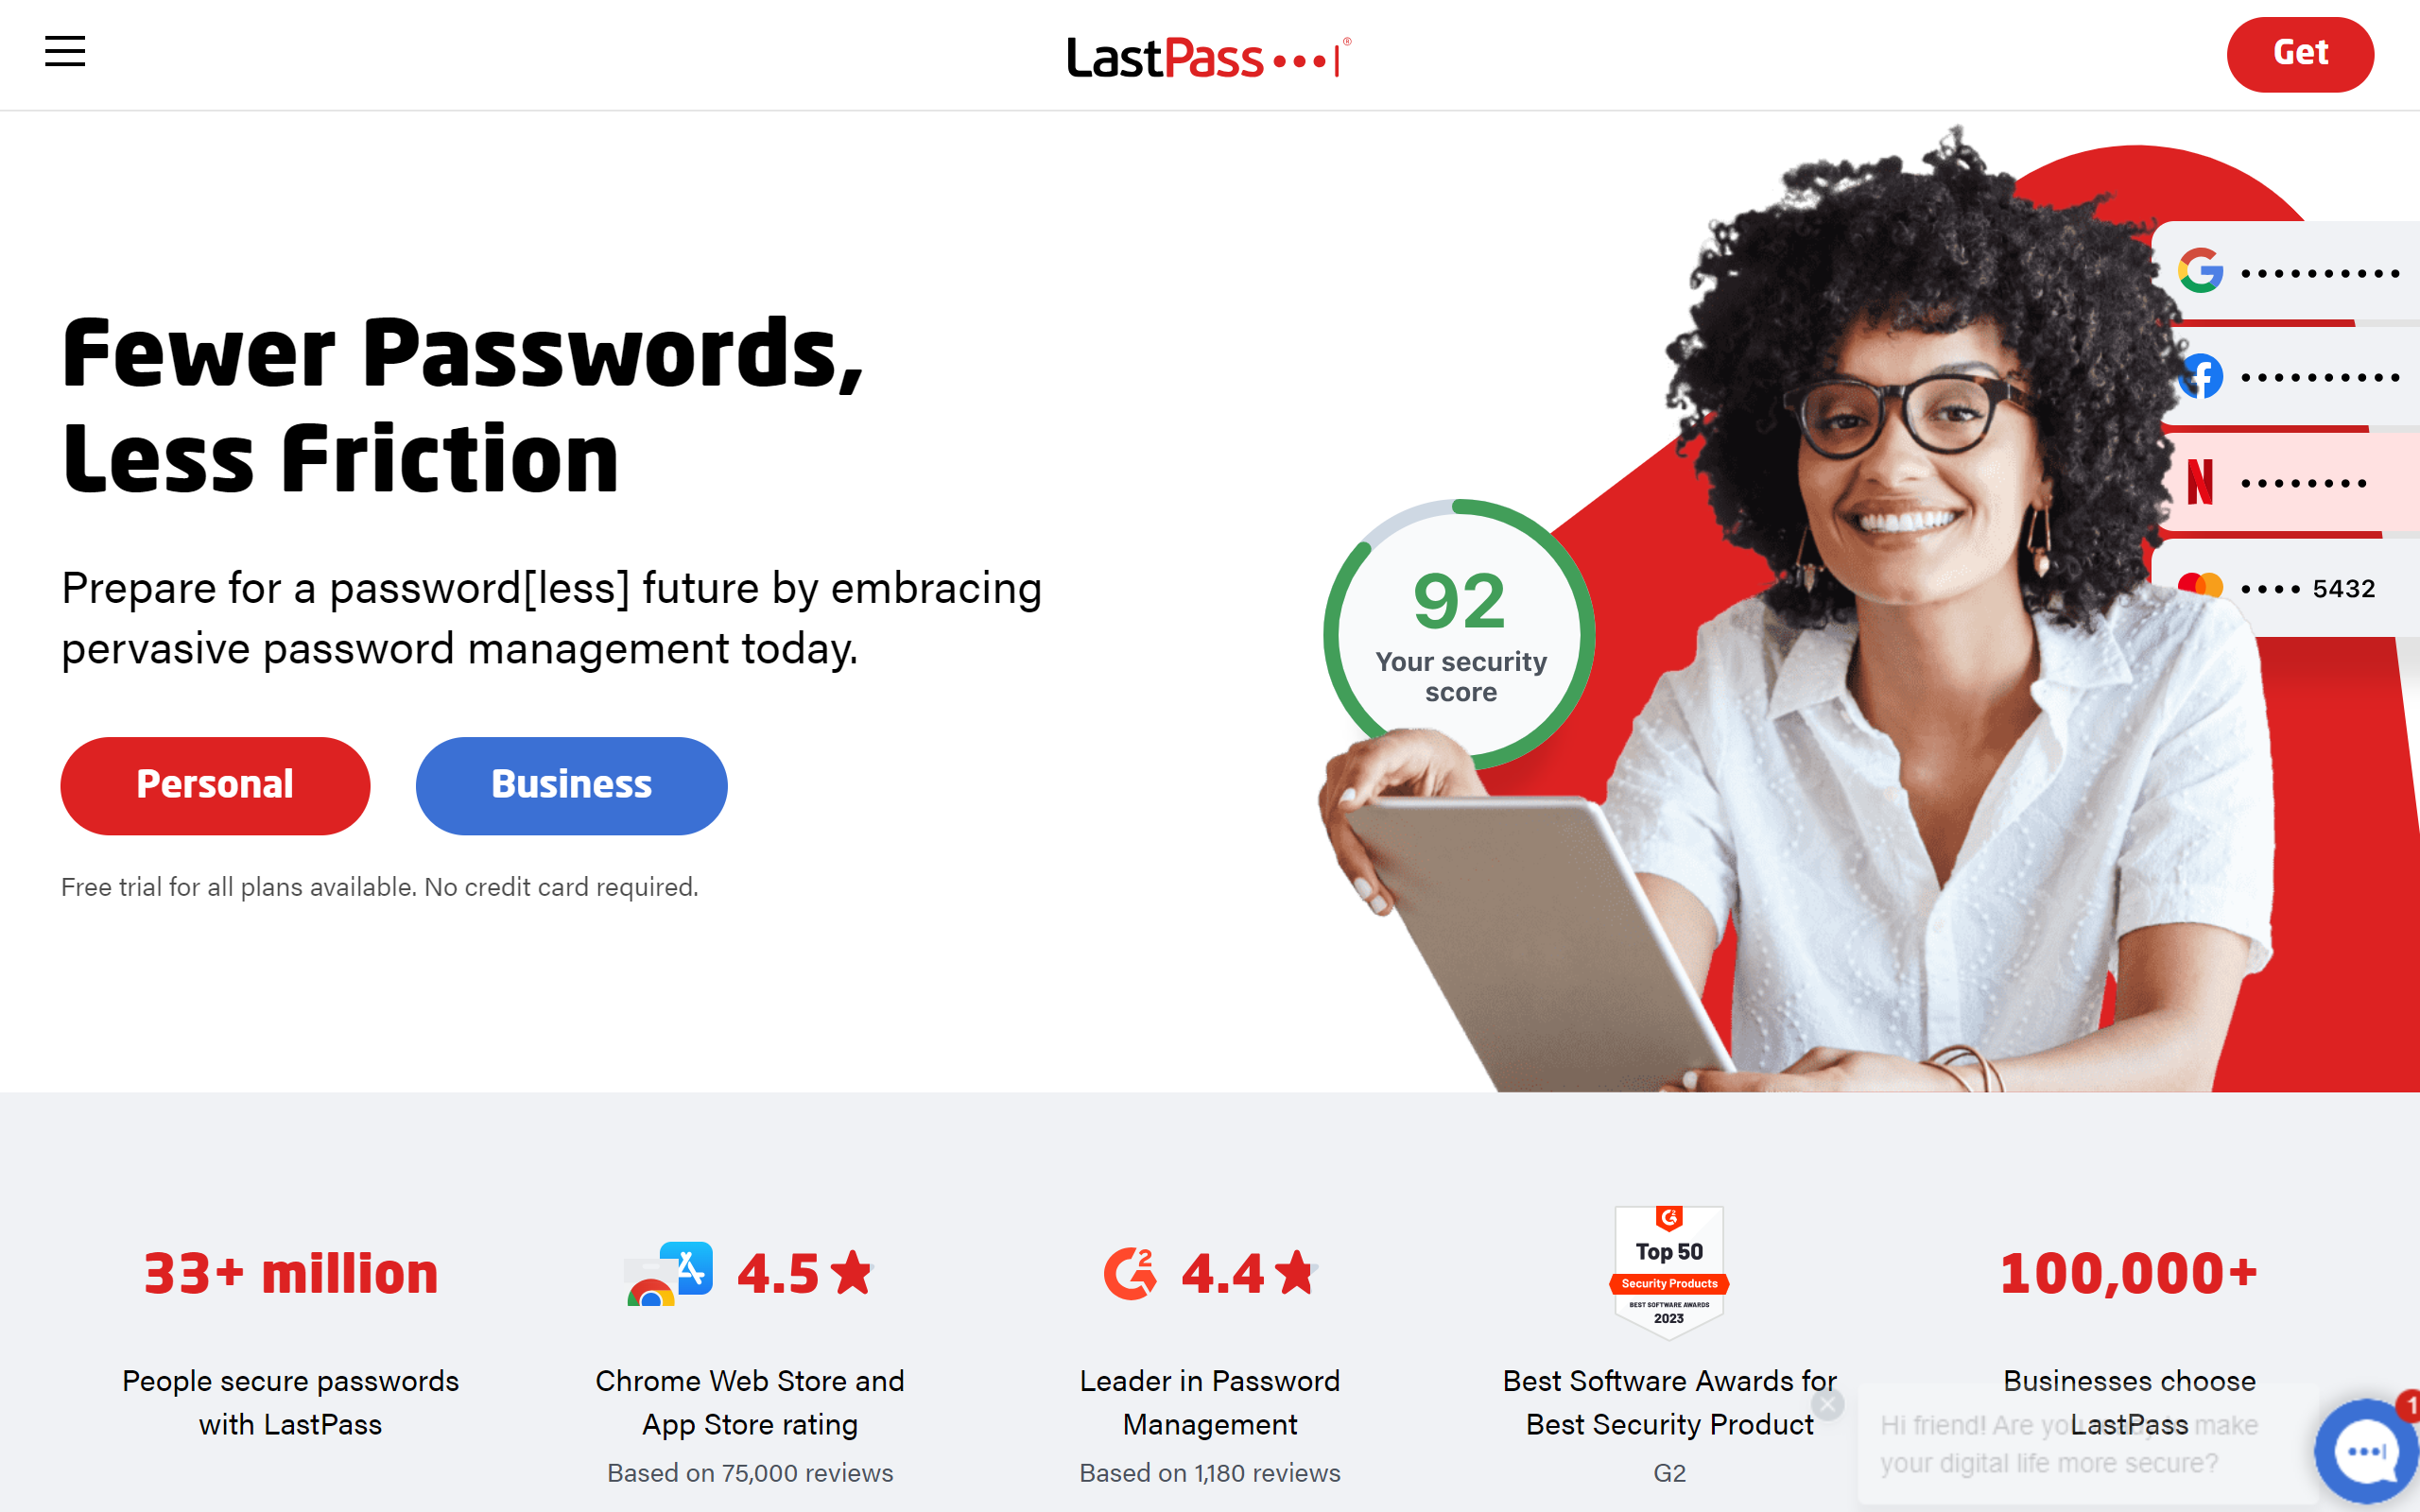 LastPass blogging app